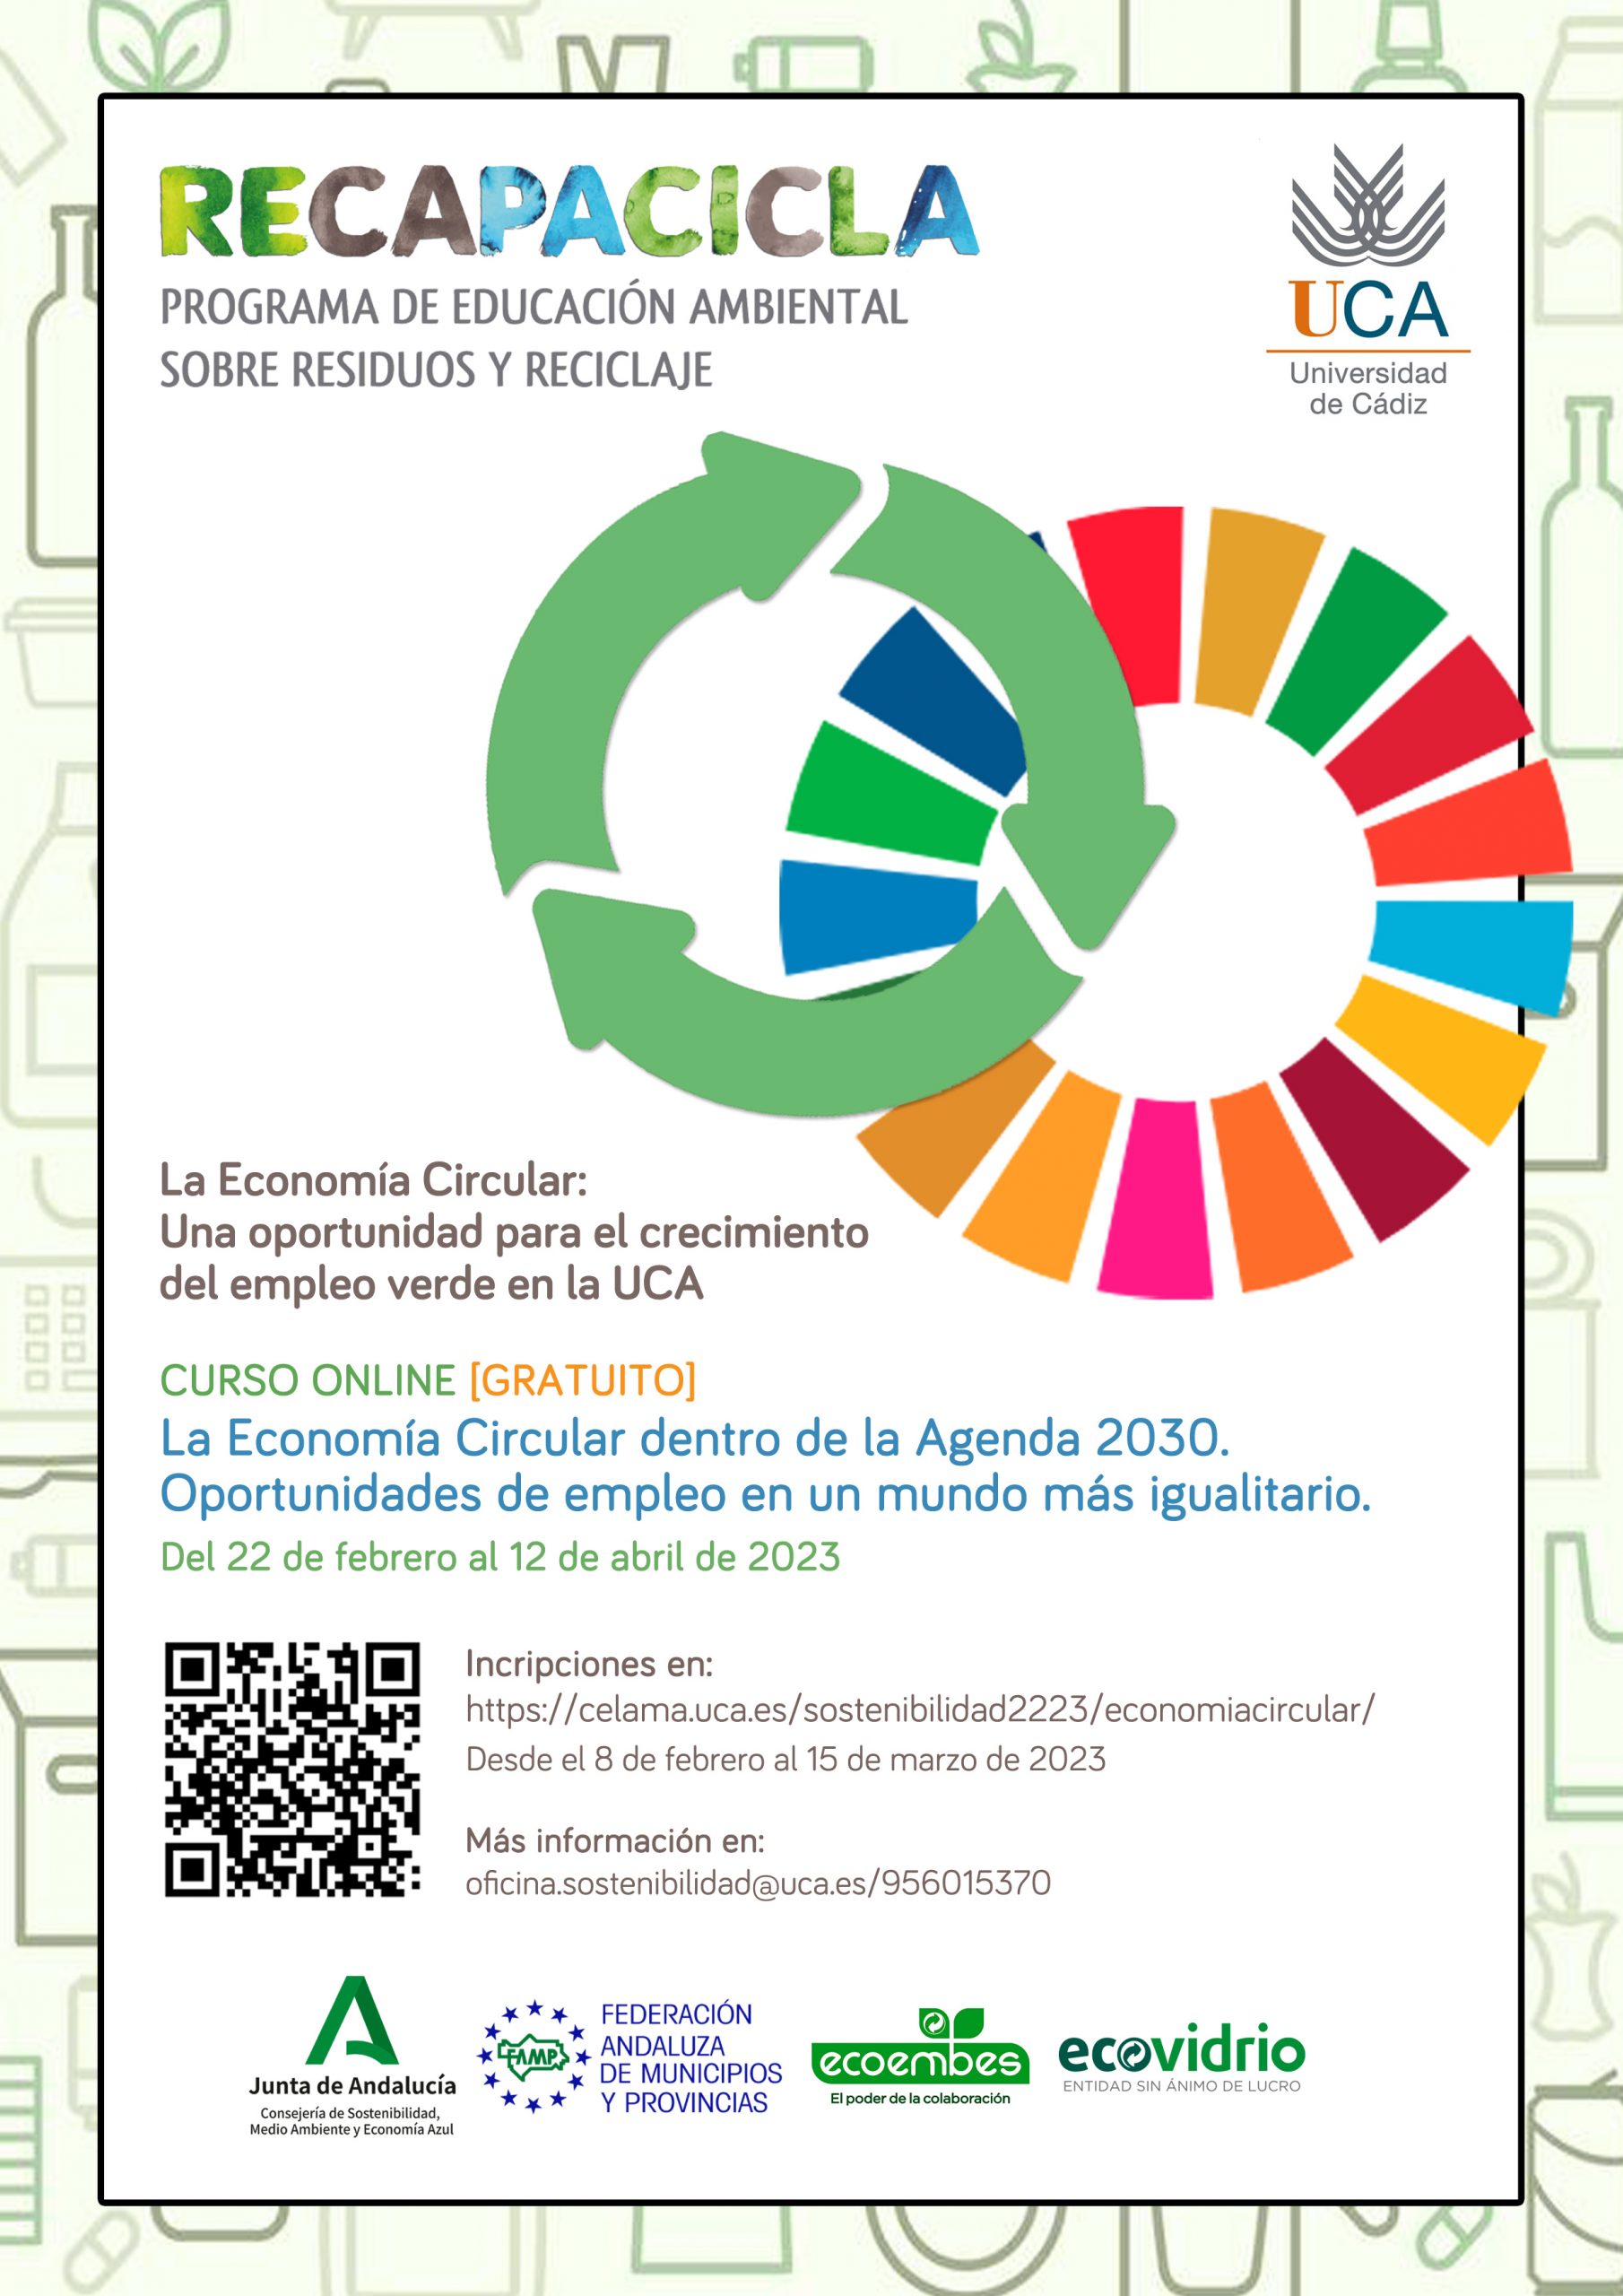 Abierto el Plazo de inscripción para el Seminario formativo ONLINE “La Economía Circular dentro de la Agenda 2030. Oportunidades de empleo en un mundo más igualitario”